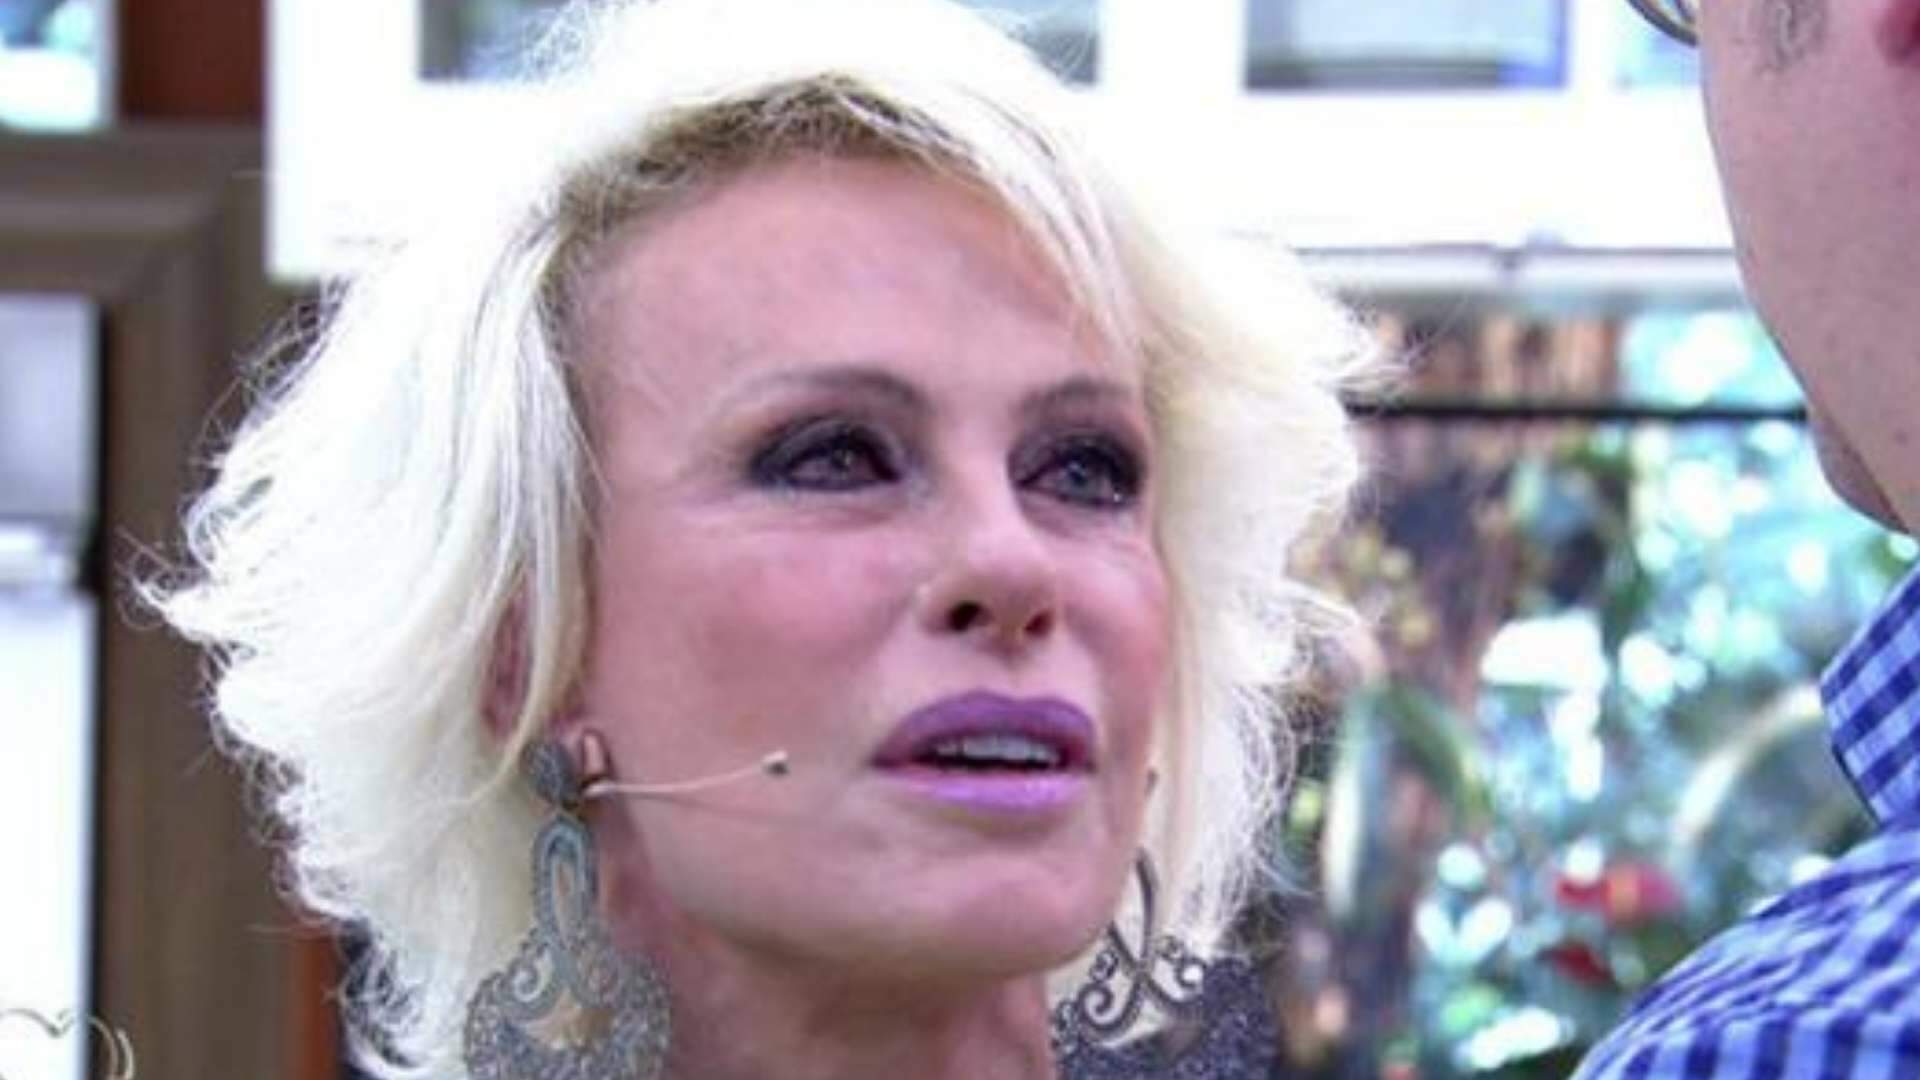 Ao vivo, Ana Maria Braga comete gafe grave e sofre enxurrada de críticas: “Como assim?” - Metropolitana FM